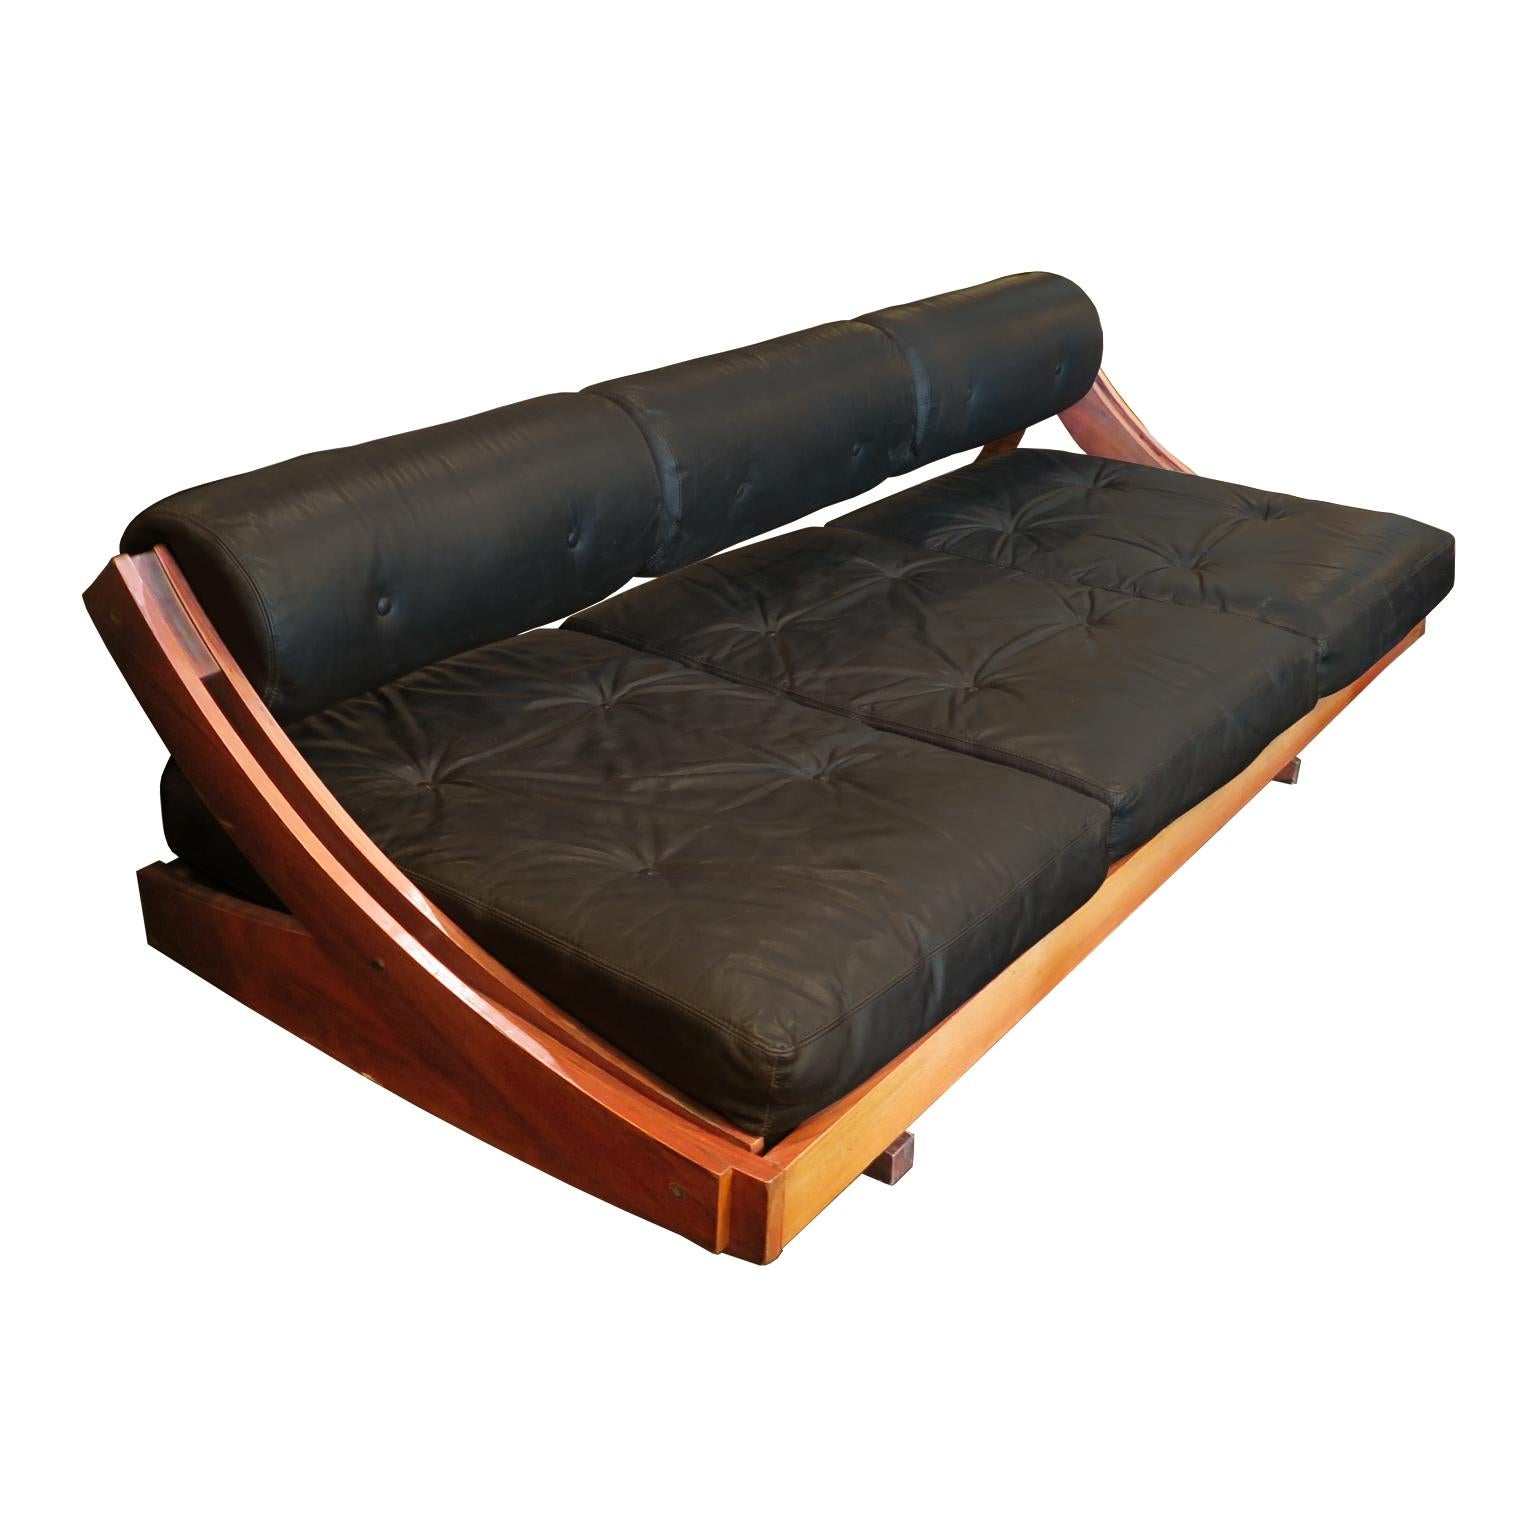 Ce canapé italien du milieu du siècle est l'œuvre de Gianni Songni pour Sormani. Le canapé présente un cadre coulissant sculptural en bois de rose avec un dossier réglable, ce qui permet à cette pièce de se transformer en canapé ou en lit de jour.